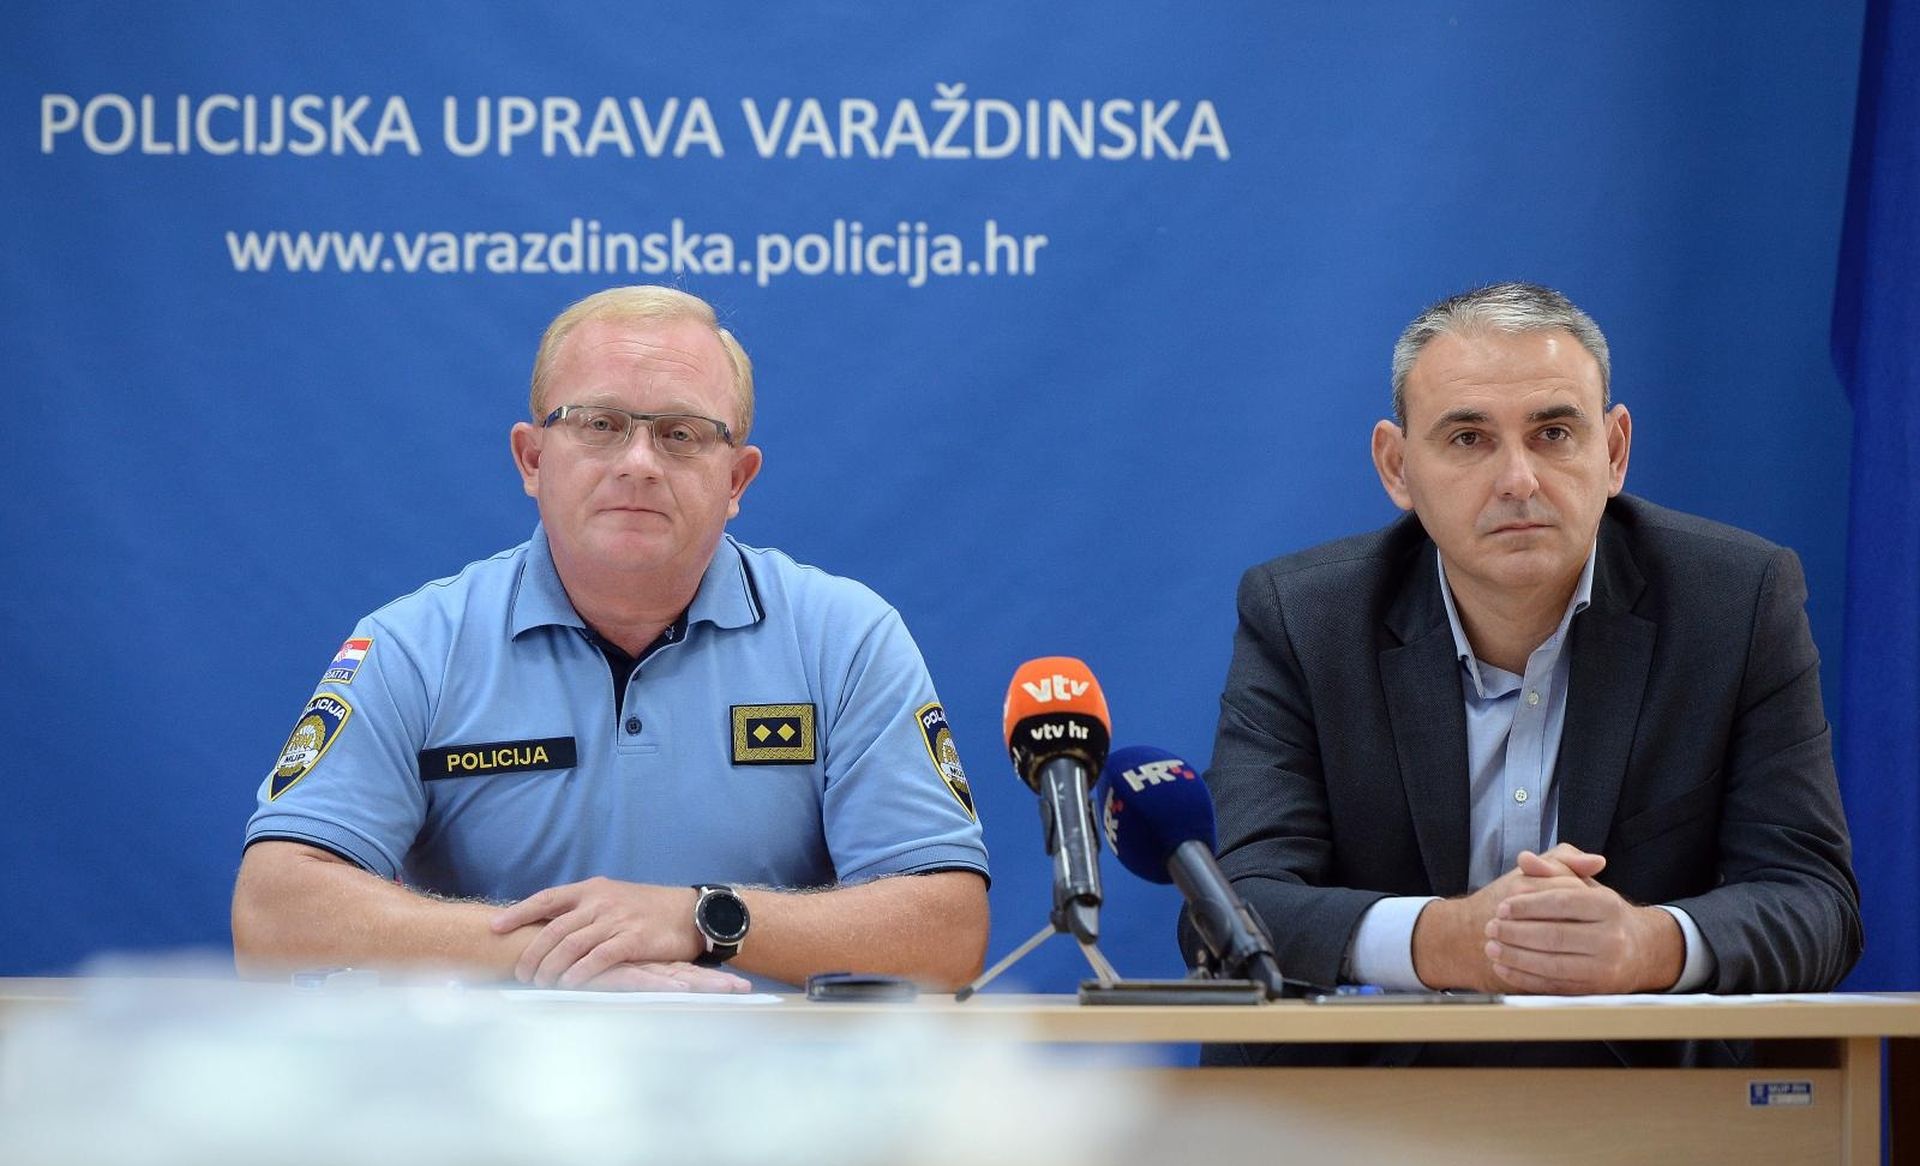 21.09.2019., Varazdin - Policijski sluzbenici PU Varazdinske zaplijenili 6kg kokaina.
Photo: Vjeran Zganec Rogulja/PIXSELL